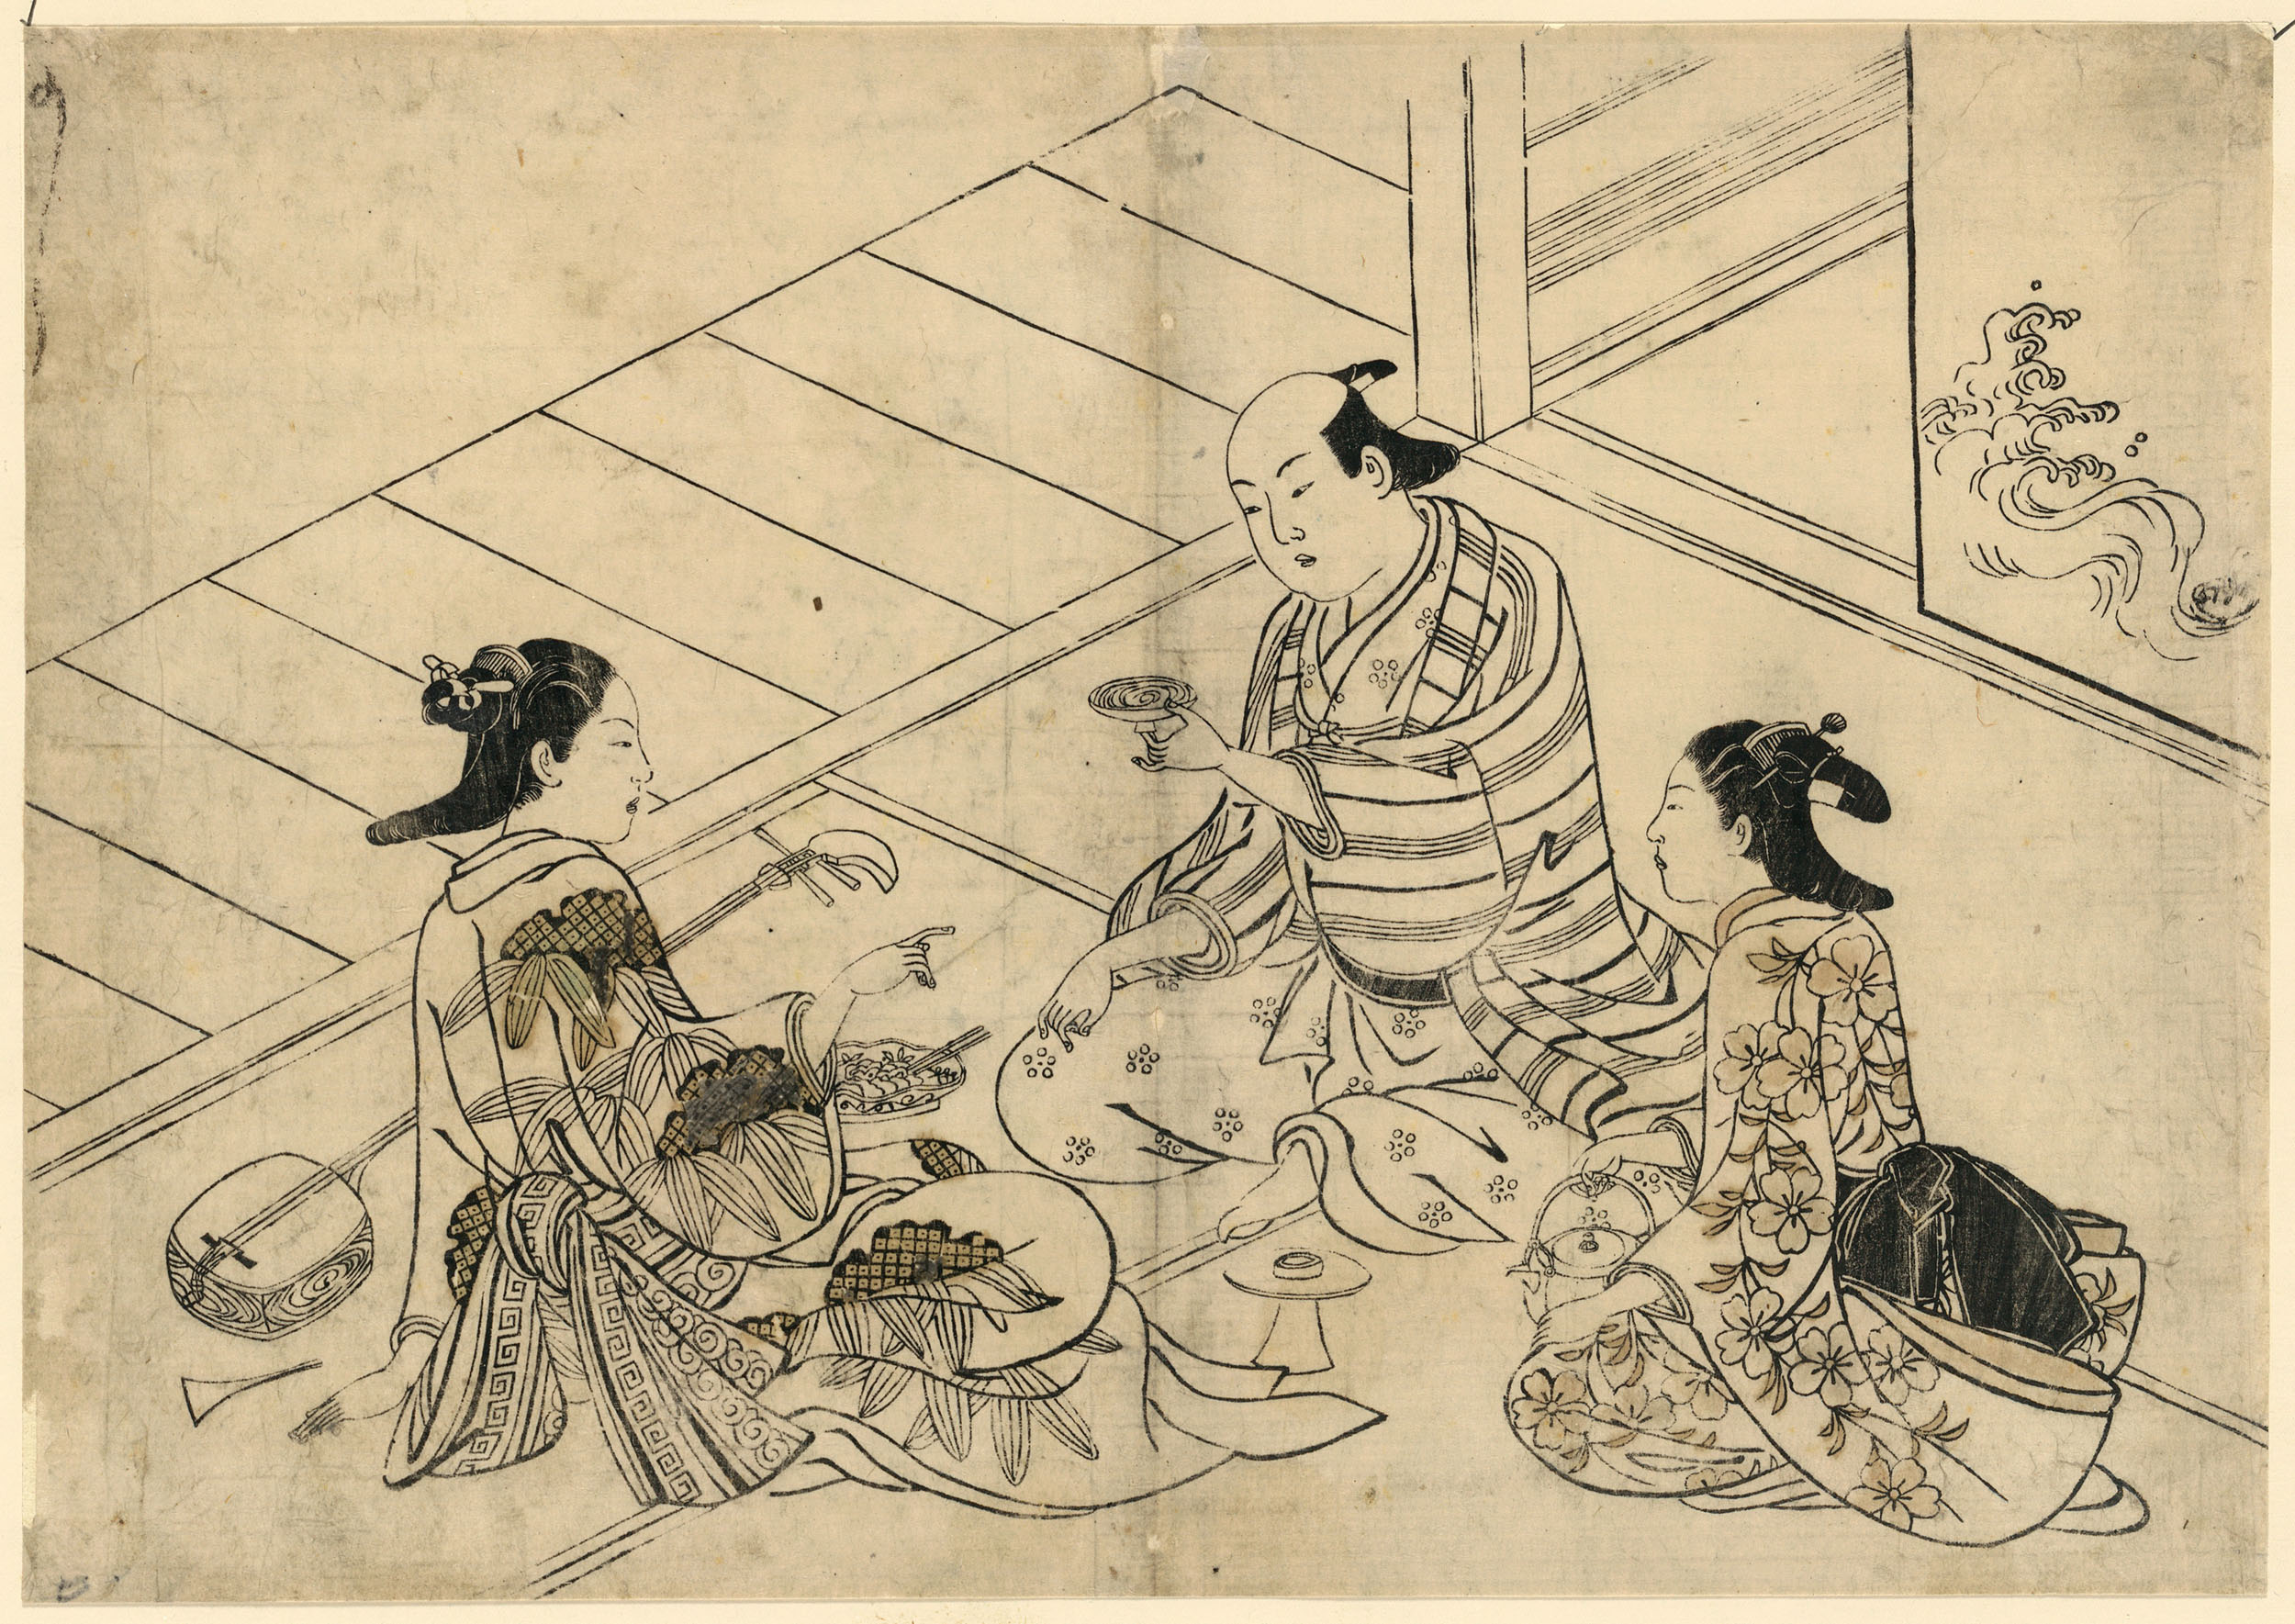 Нисикава Сукэнобу. "Мужчина с двумя гейшами". Между 1716 и 1742.